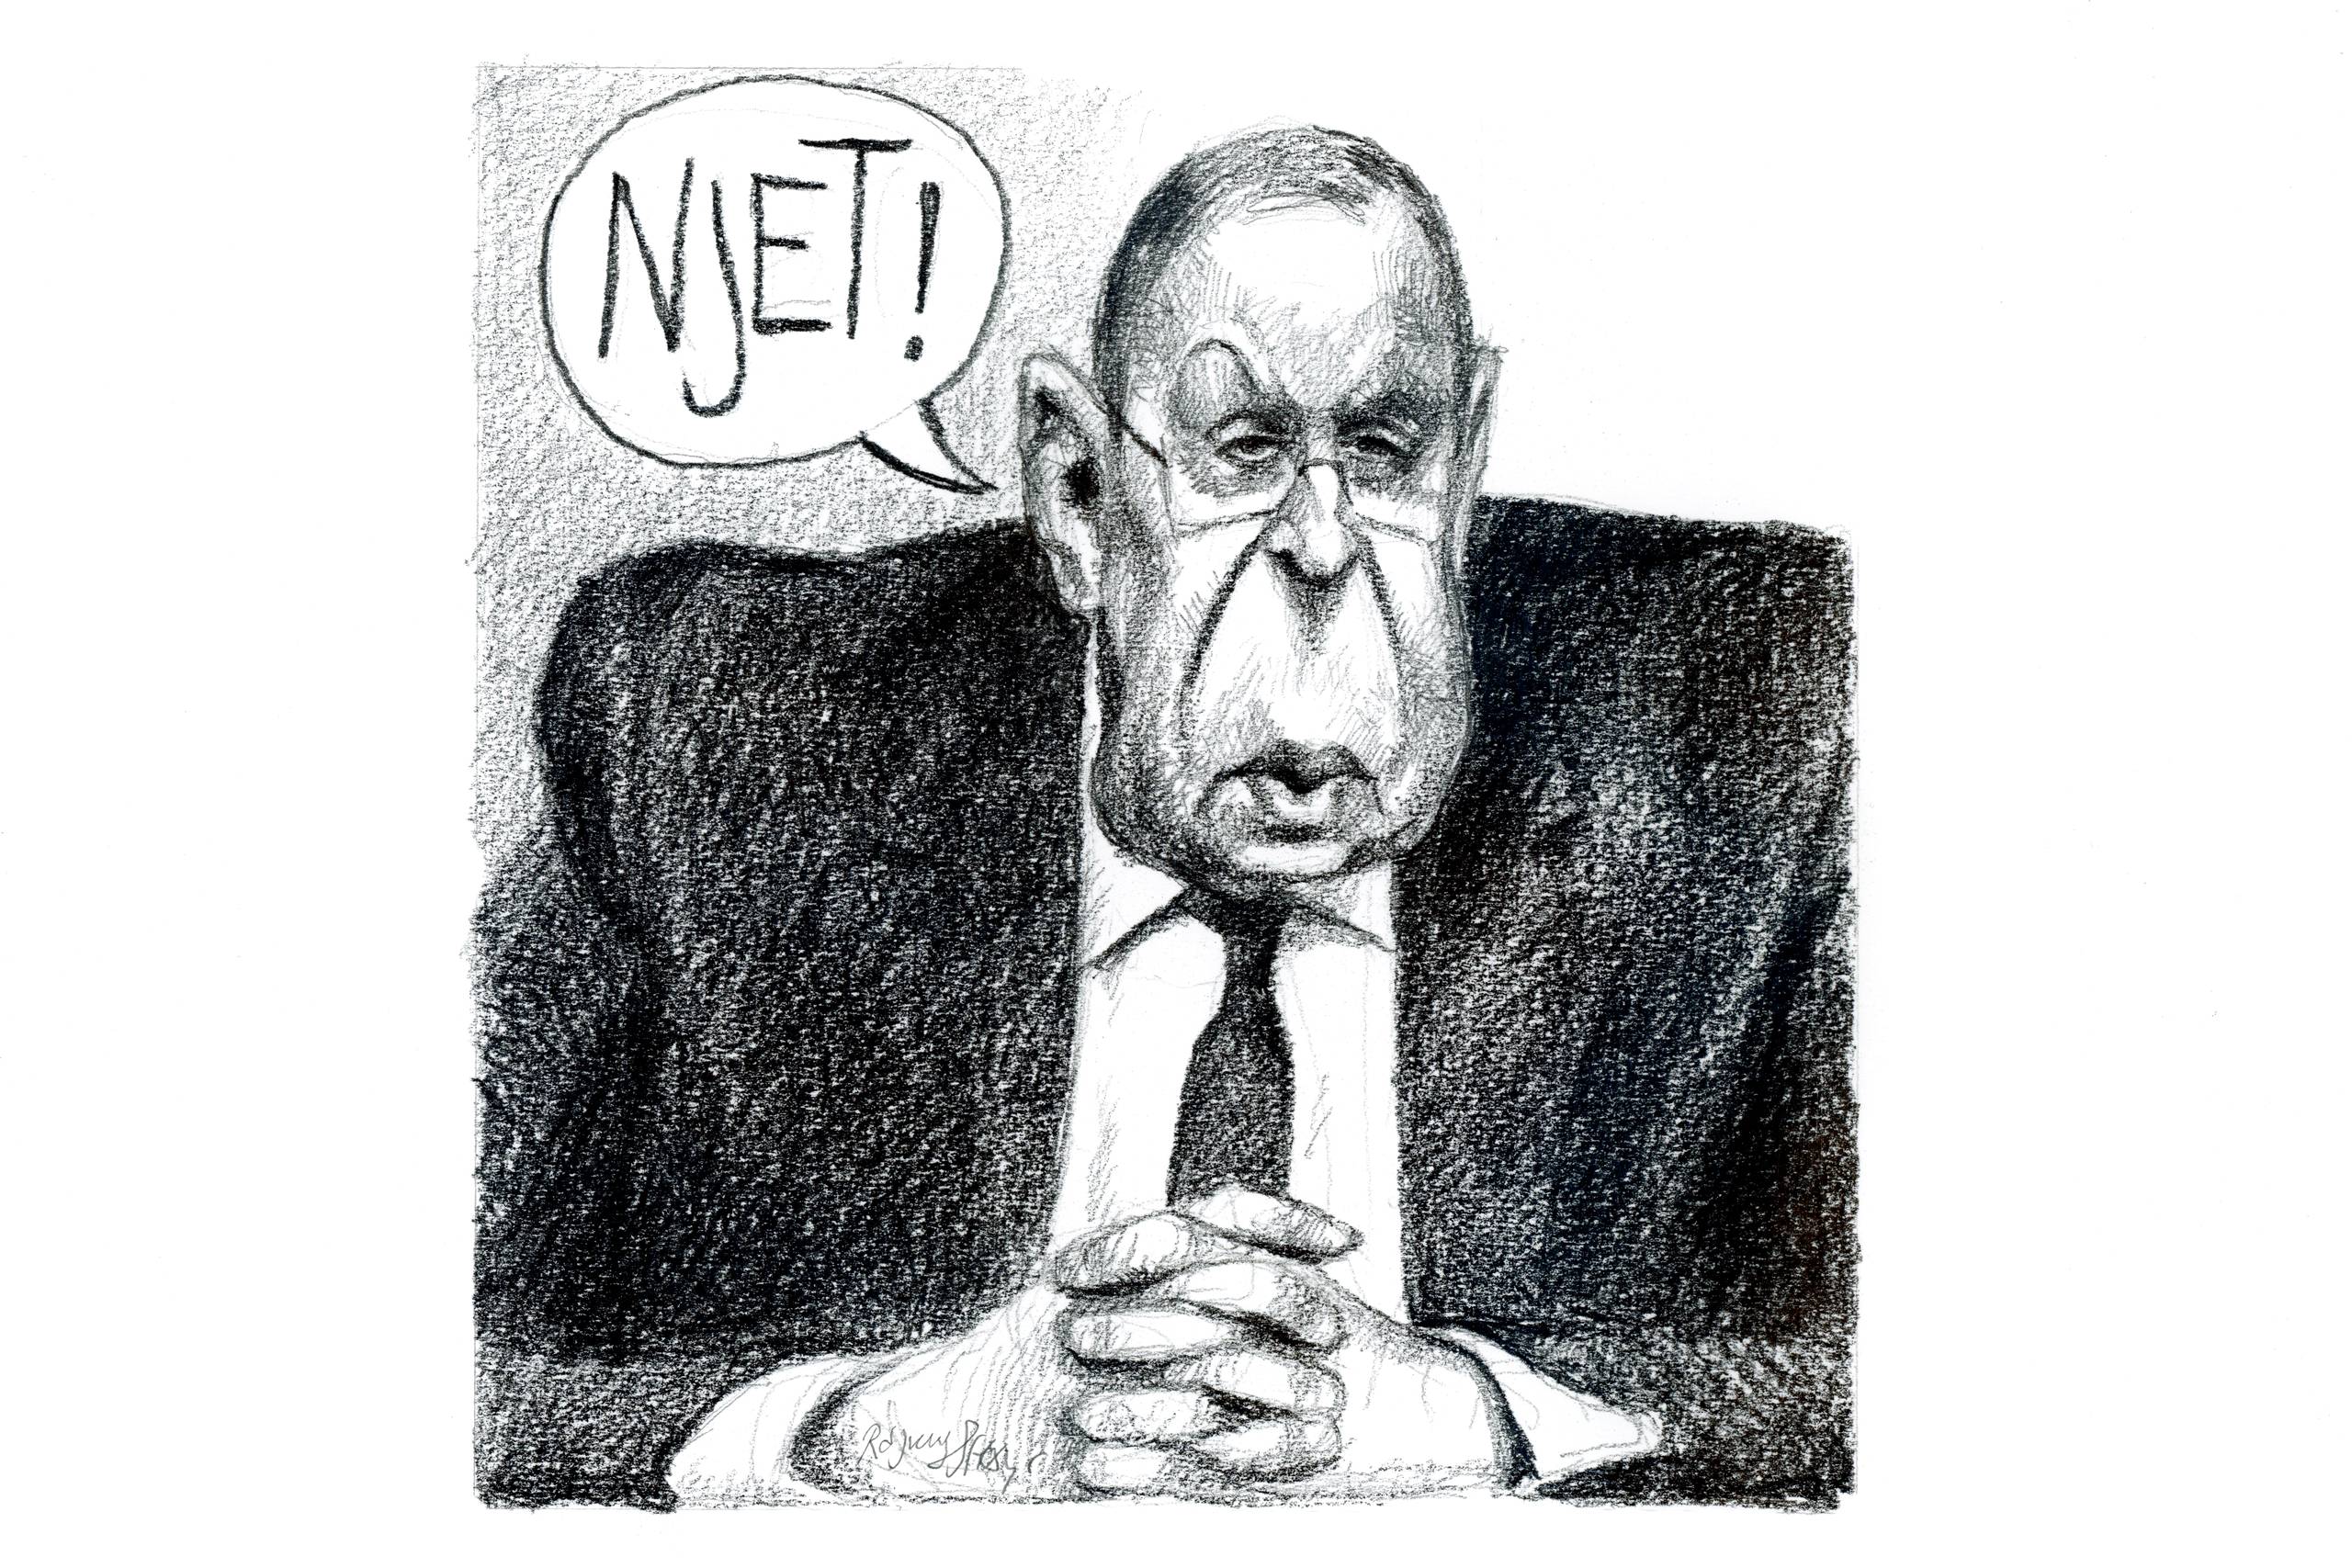 Sergej Lavrov, den mangeårige udenrigsminister i Rusland, lever op til forgængeren, Andrej Gromykos tilnavn, "Mr. Njet". Tegning: Rasmus Sand Høyer